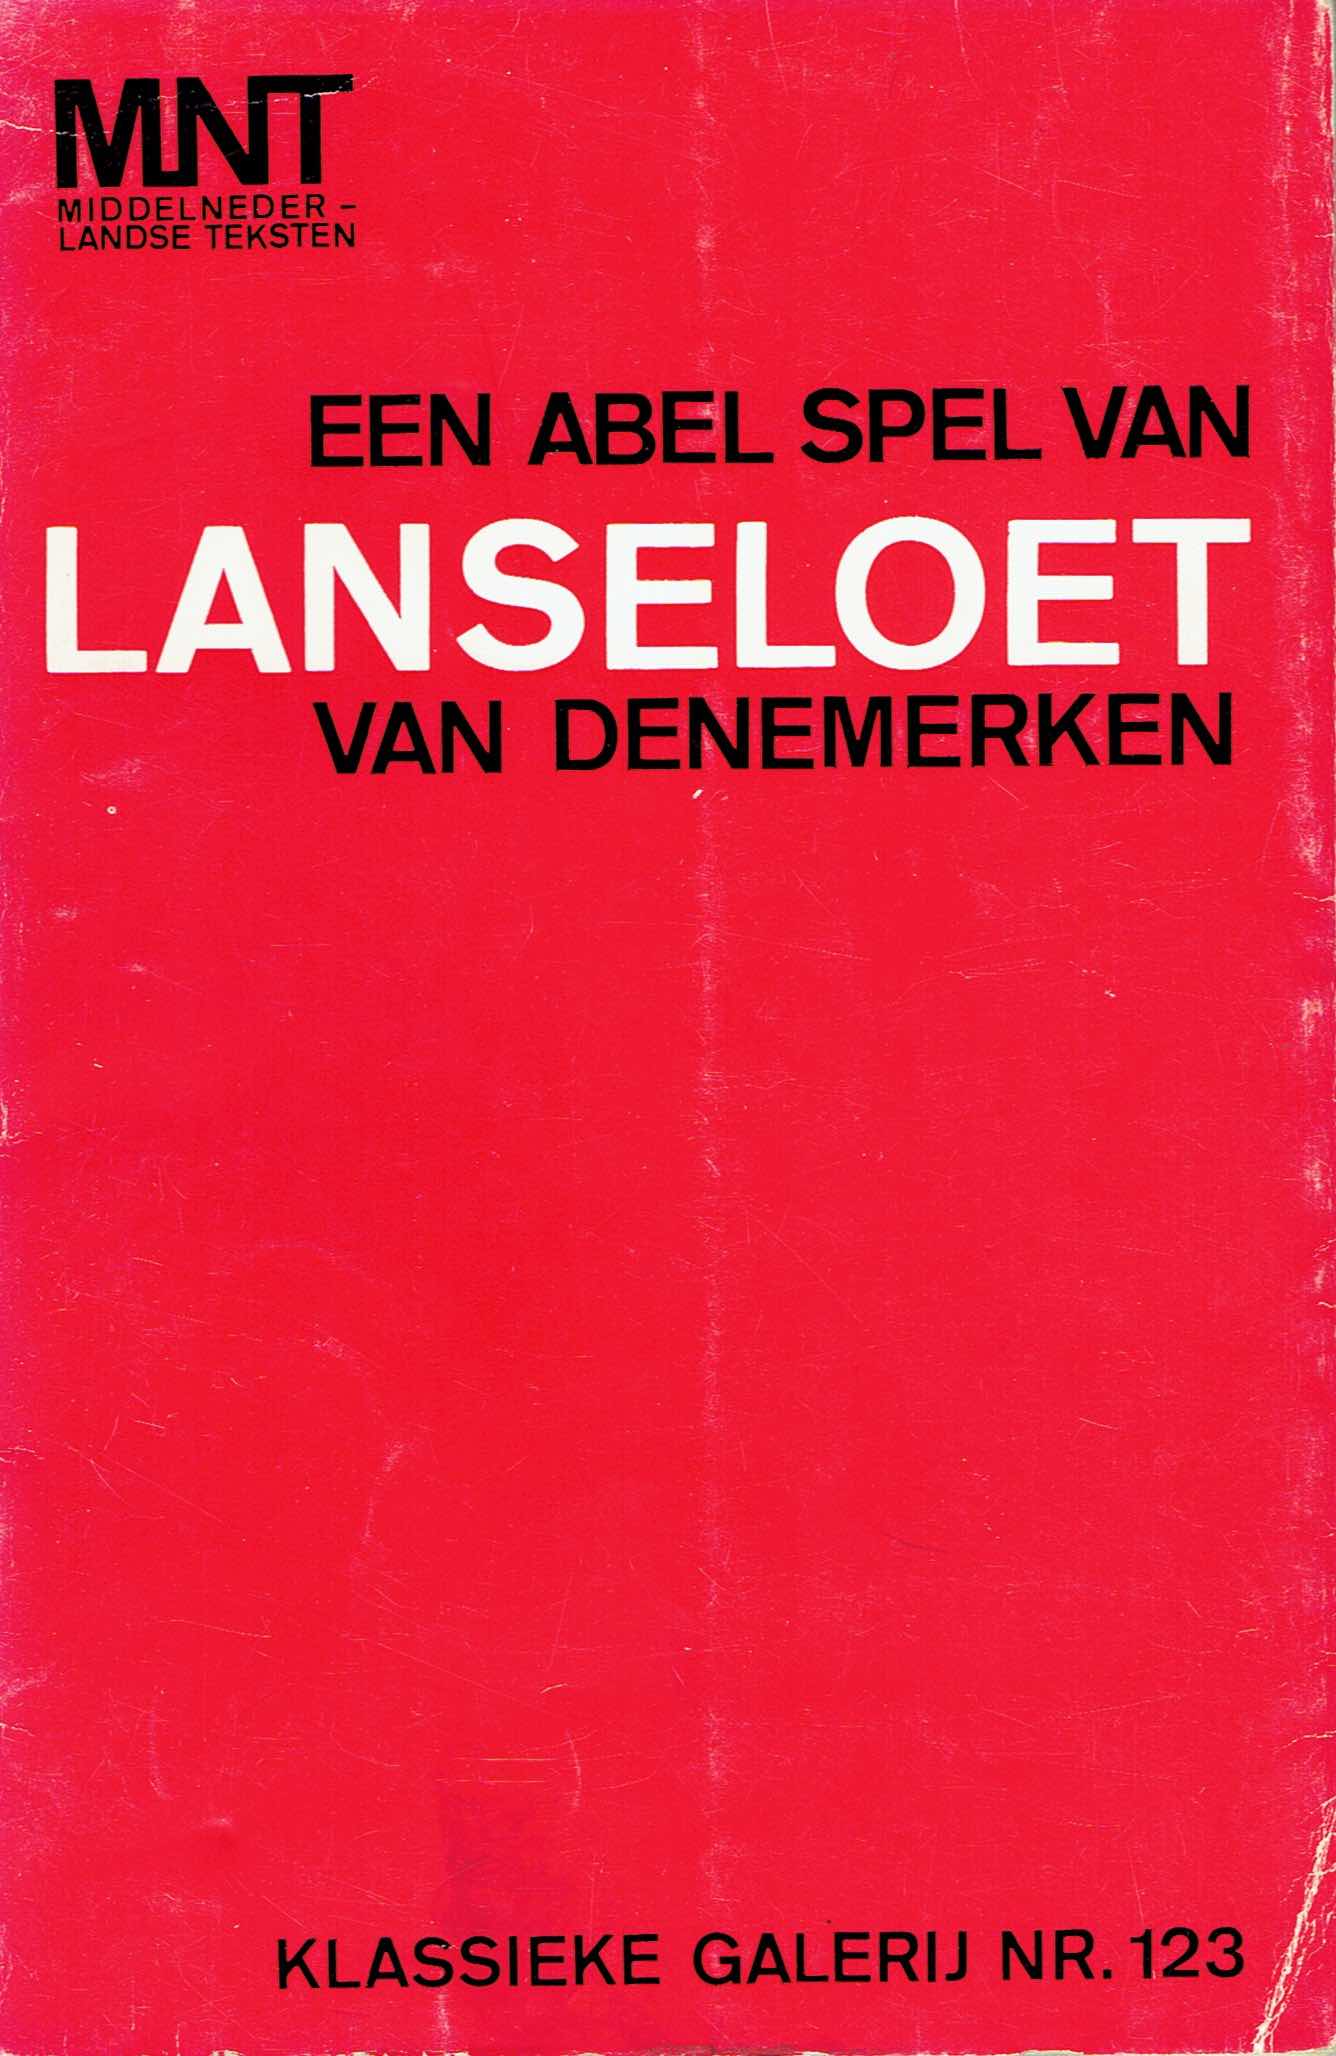 ill. Abel spel Lanseloet (rood)